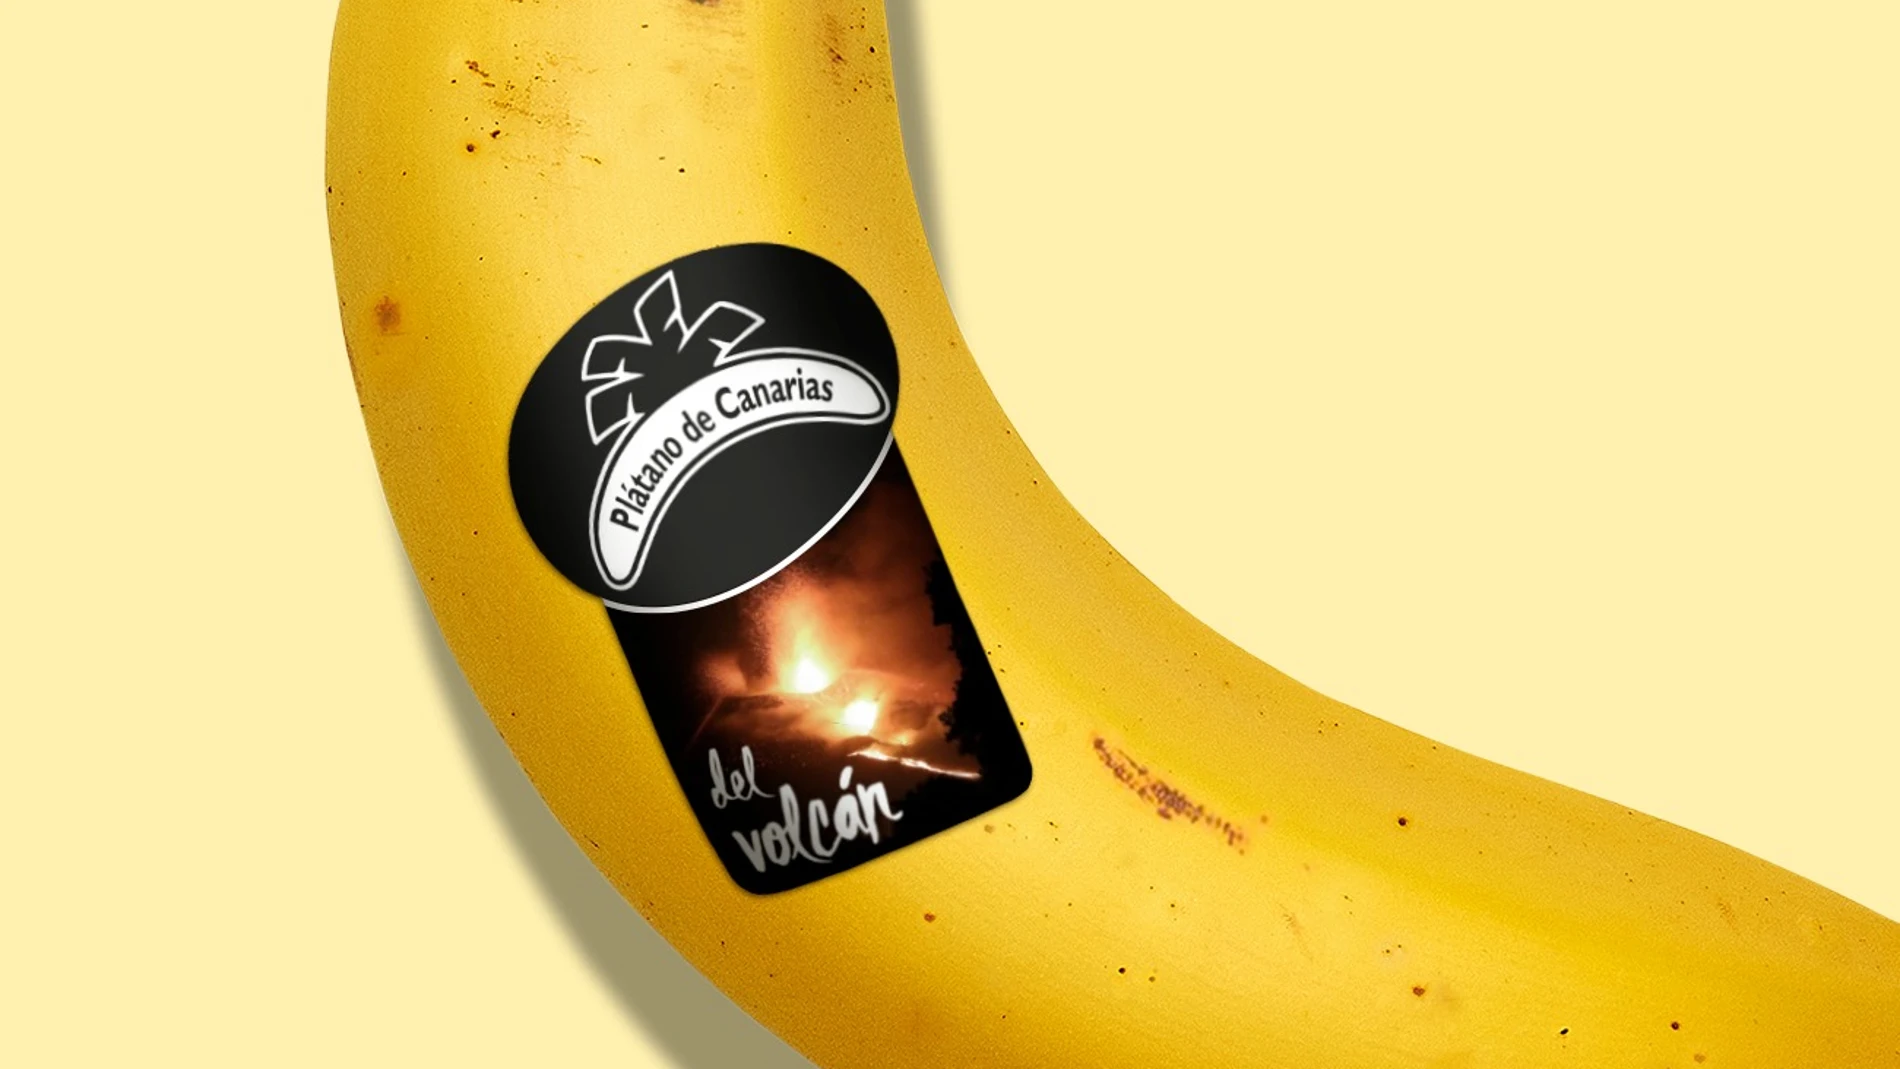 Las nuevas etiquetas para identificar el plátano de La Palma